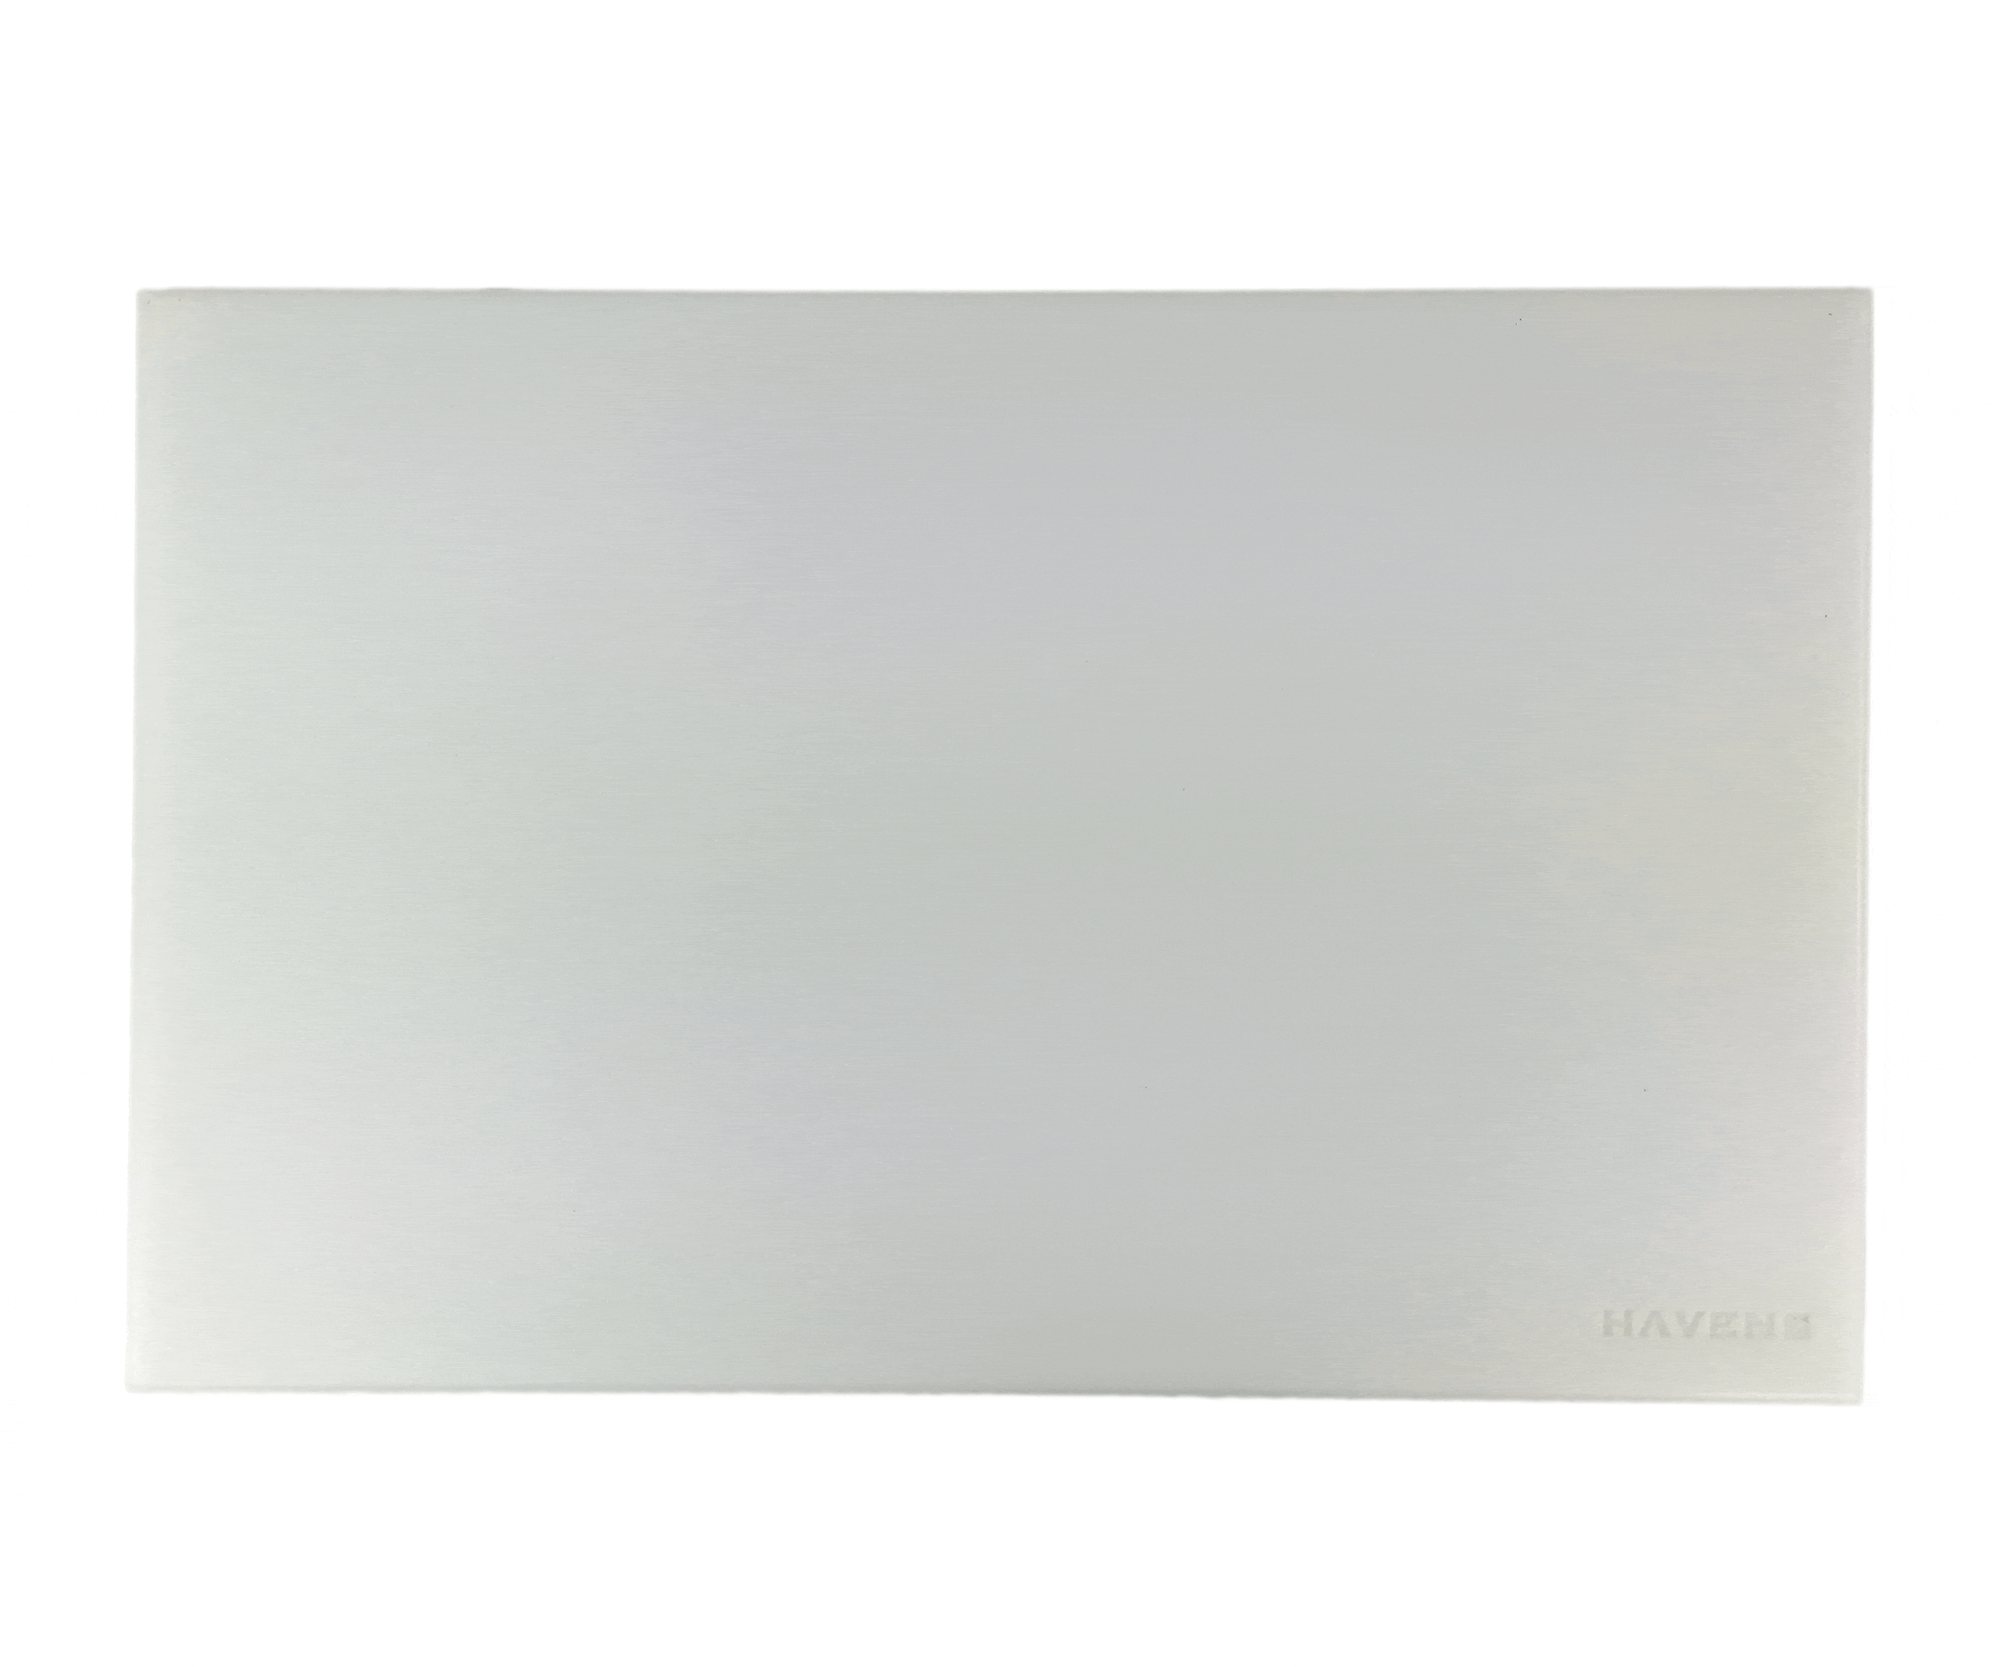 Cutting Board -  White Polycarbonate Cutting Board